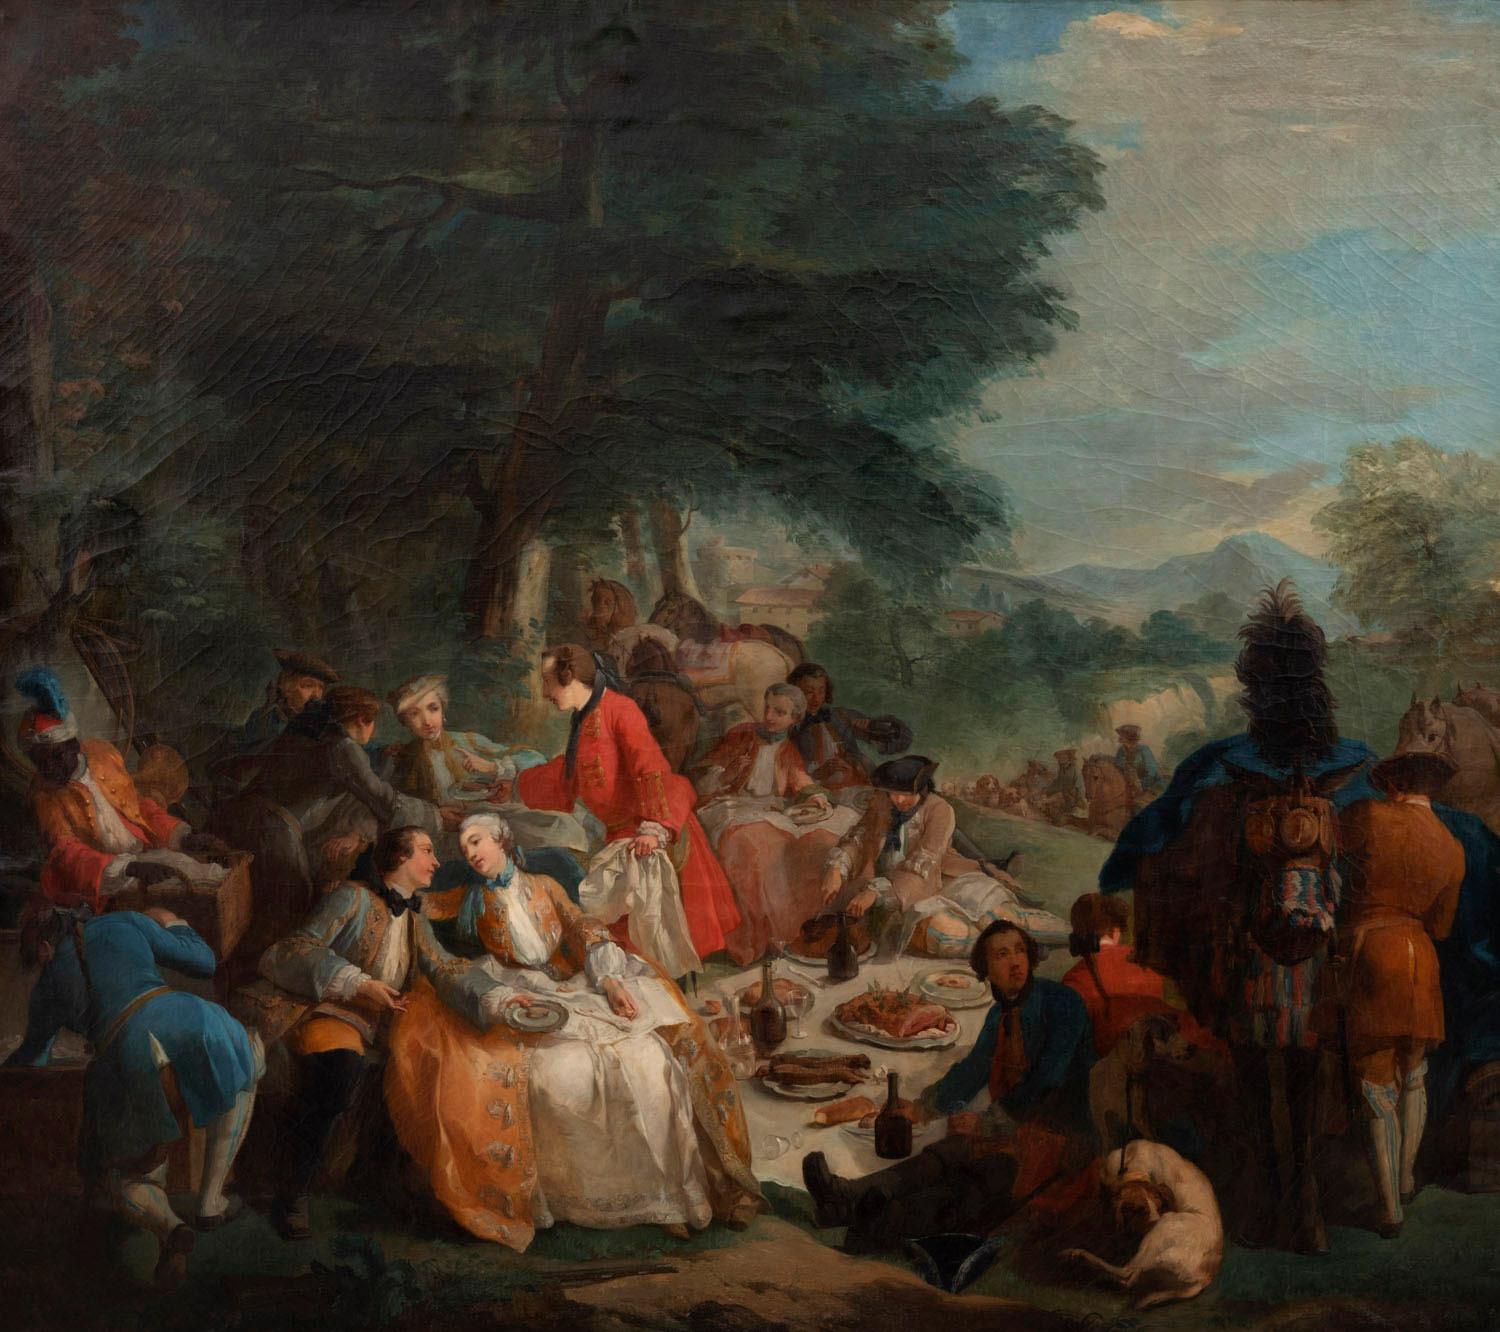 D'après Carle Van Loo, La halte de chasse (1737) (en anglais 